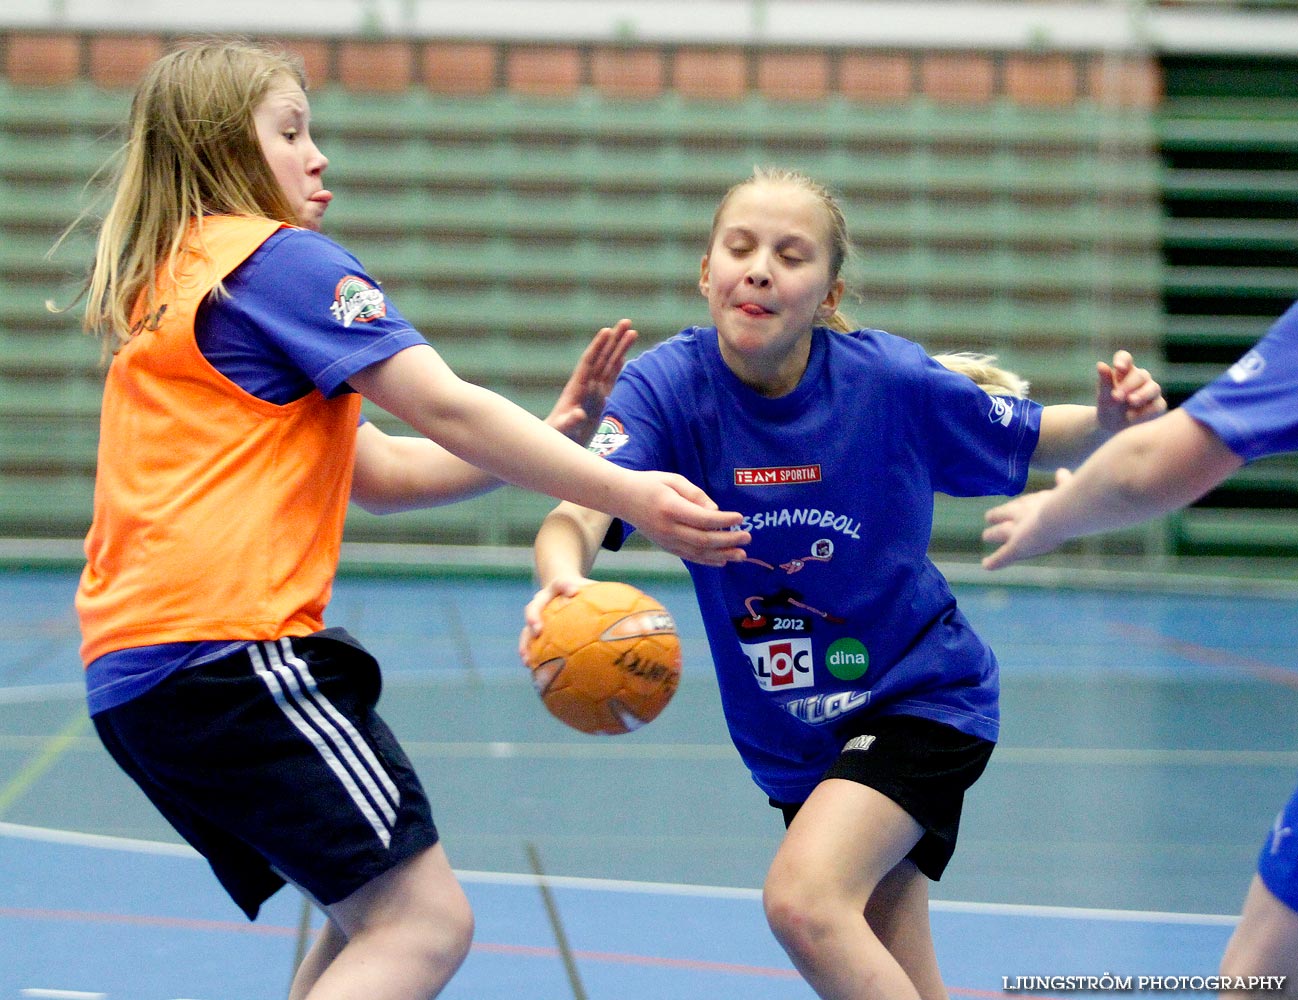 Klasshandboll Skövde 2012 Åldersklass 2001,mix,Arena Skövde,Skövde,Sverige,Handboll,,2012,46960